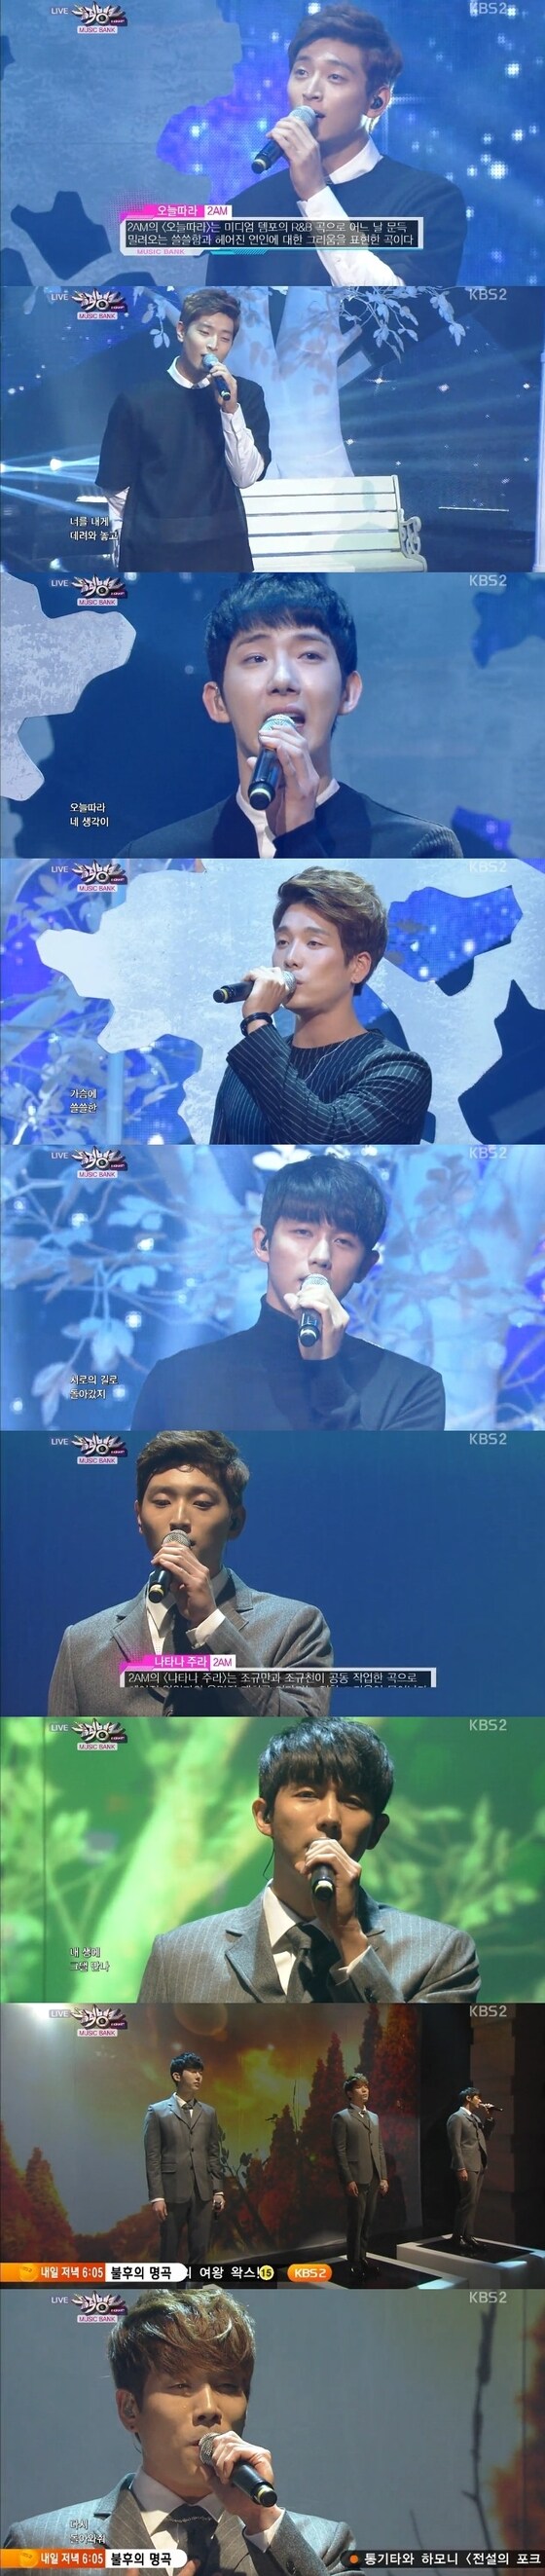 31일 오후 6시30분 방송된 KBS2 ´뮤직뱅크´에서 2AM의 컴백 무대가 공개됐다. © KBS2 ´뮤직뱅크´ 캡처